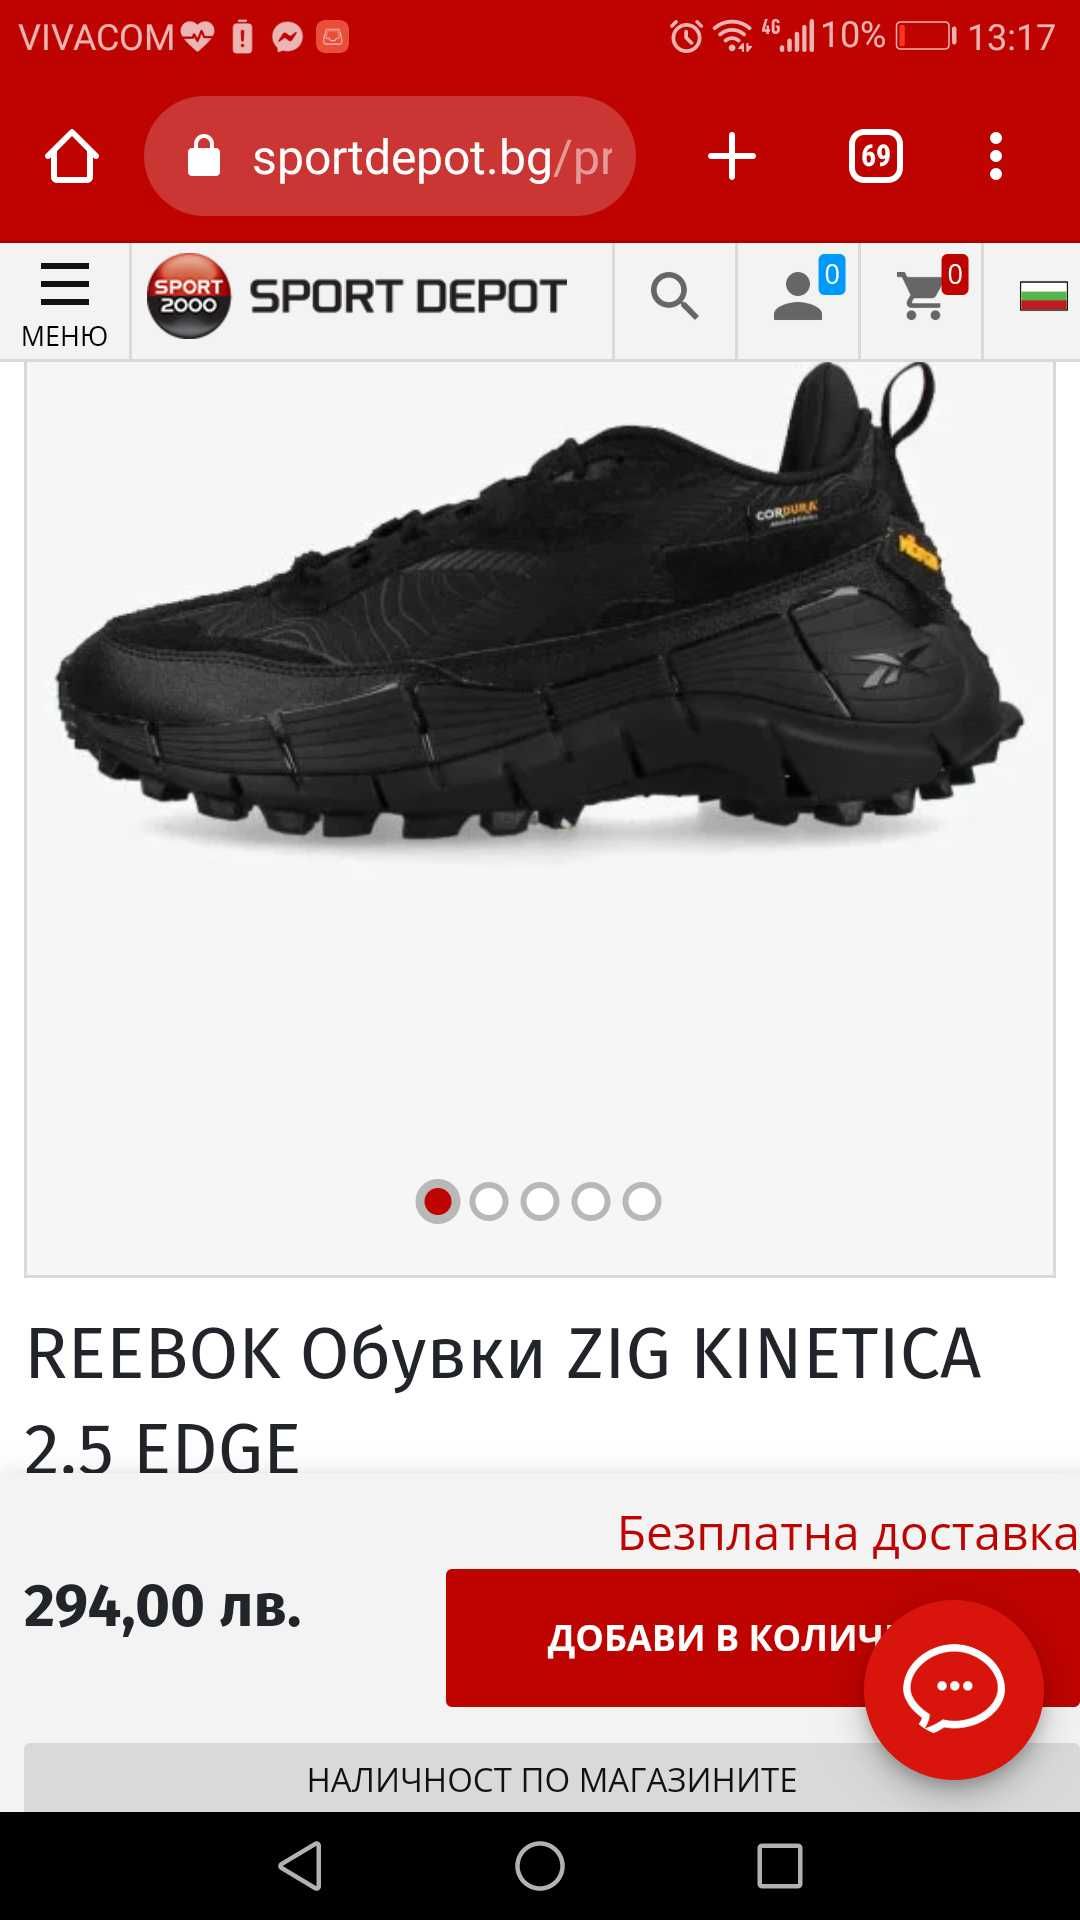 Reebok Zig Kinetica - размер 43 и 44